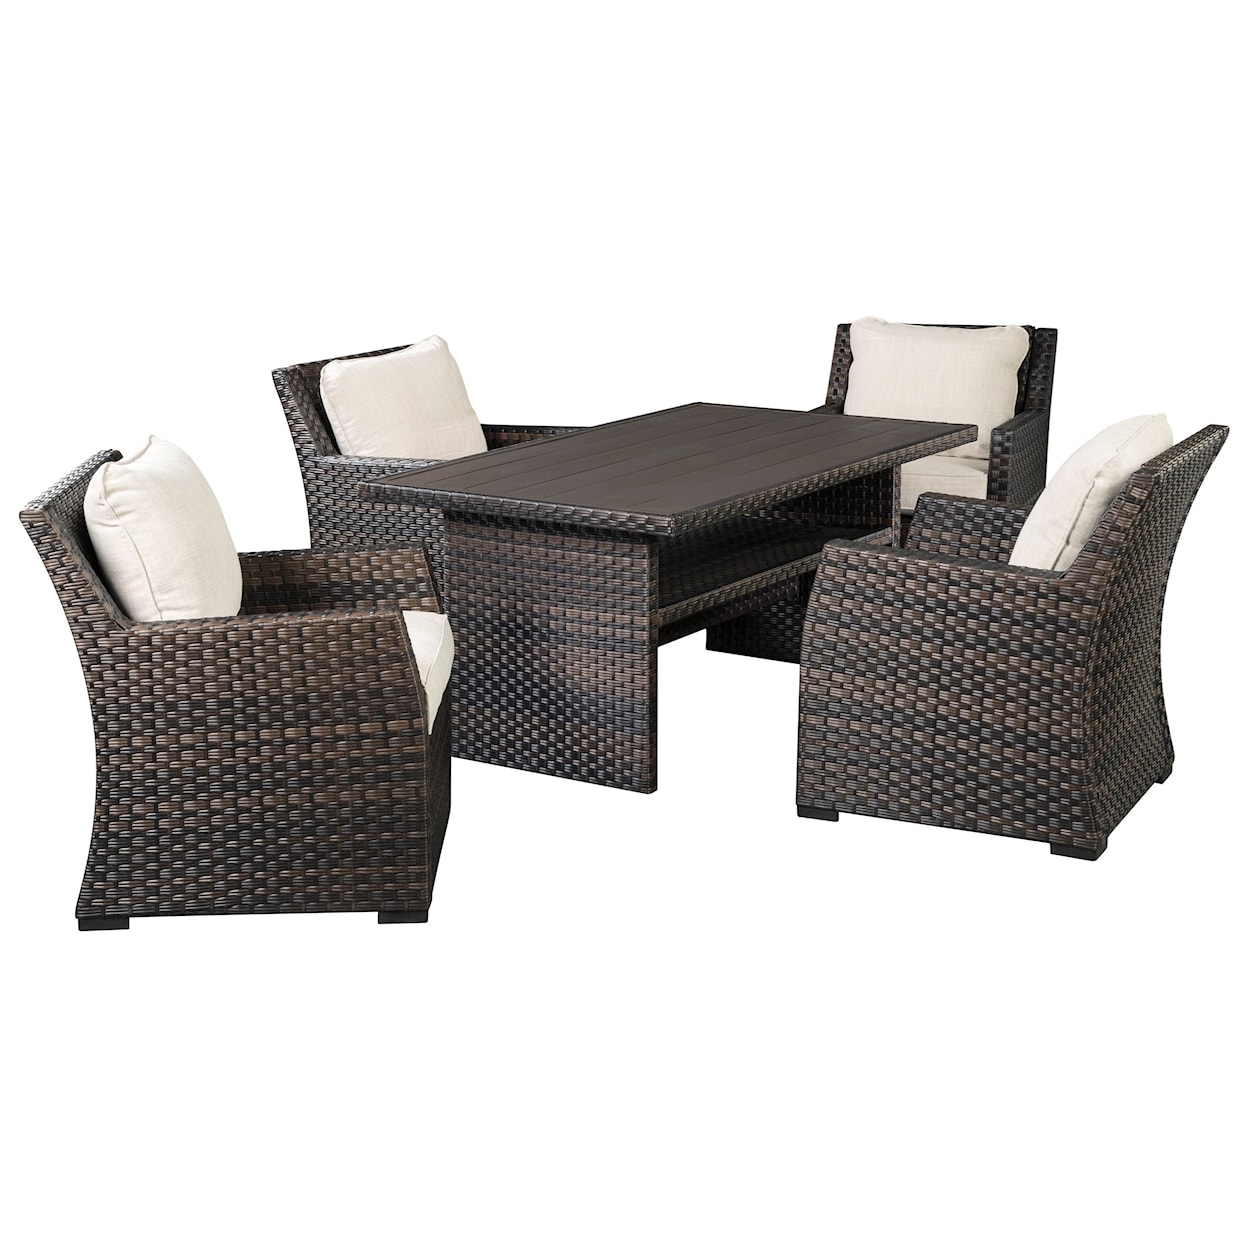 Ashley Furniture Signature Design Easy Isle Multi-Use Table & 4 Lounge Chairs